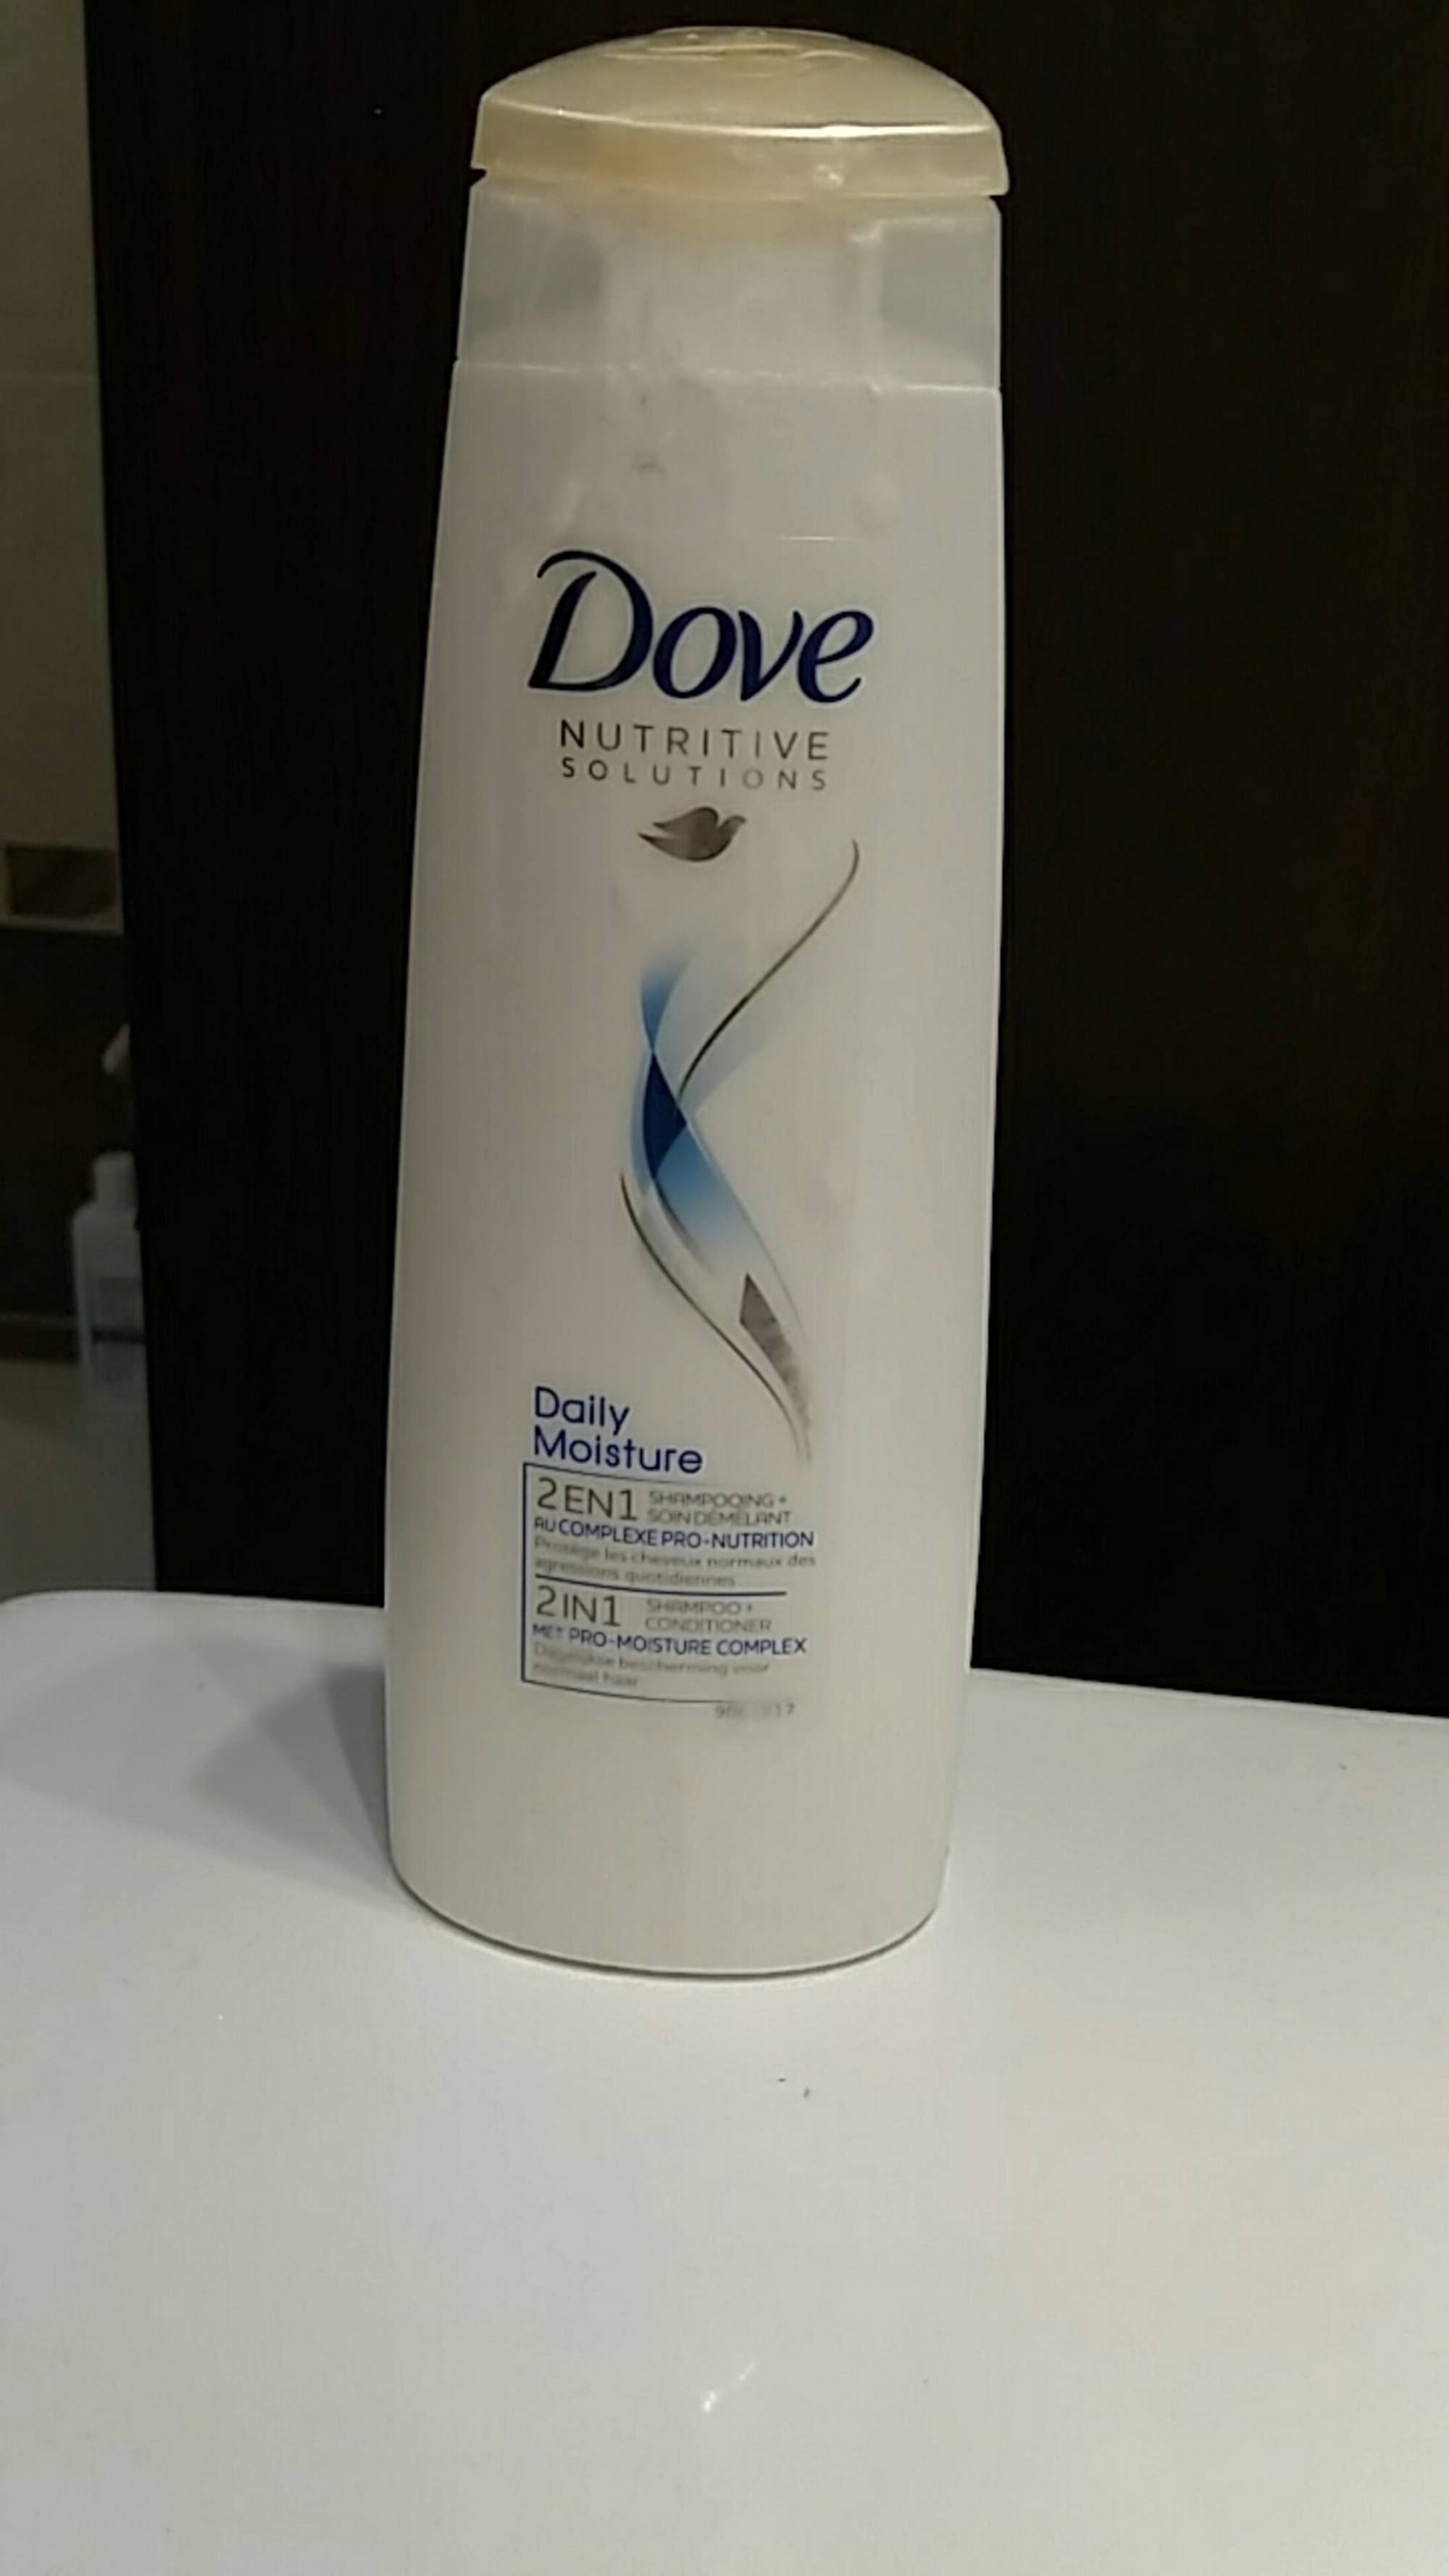 DOVE - Dily moisture - 2 en 1 shampooing